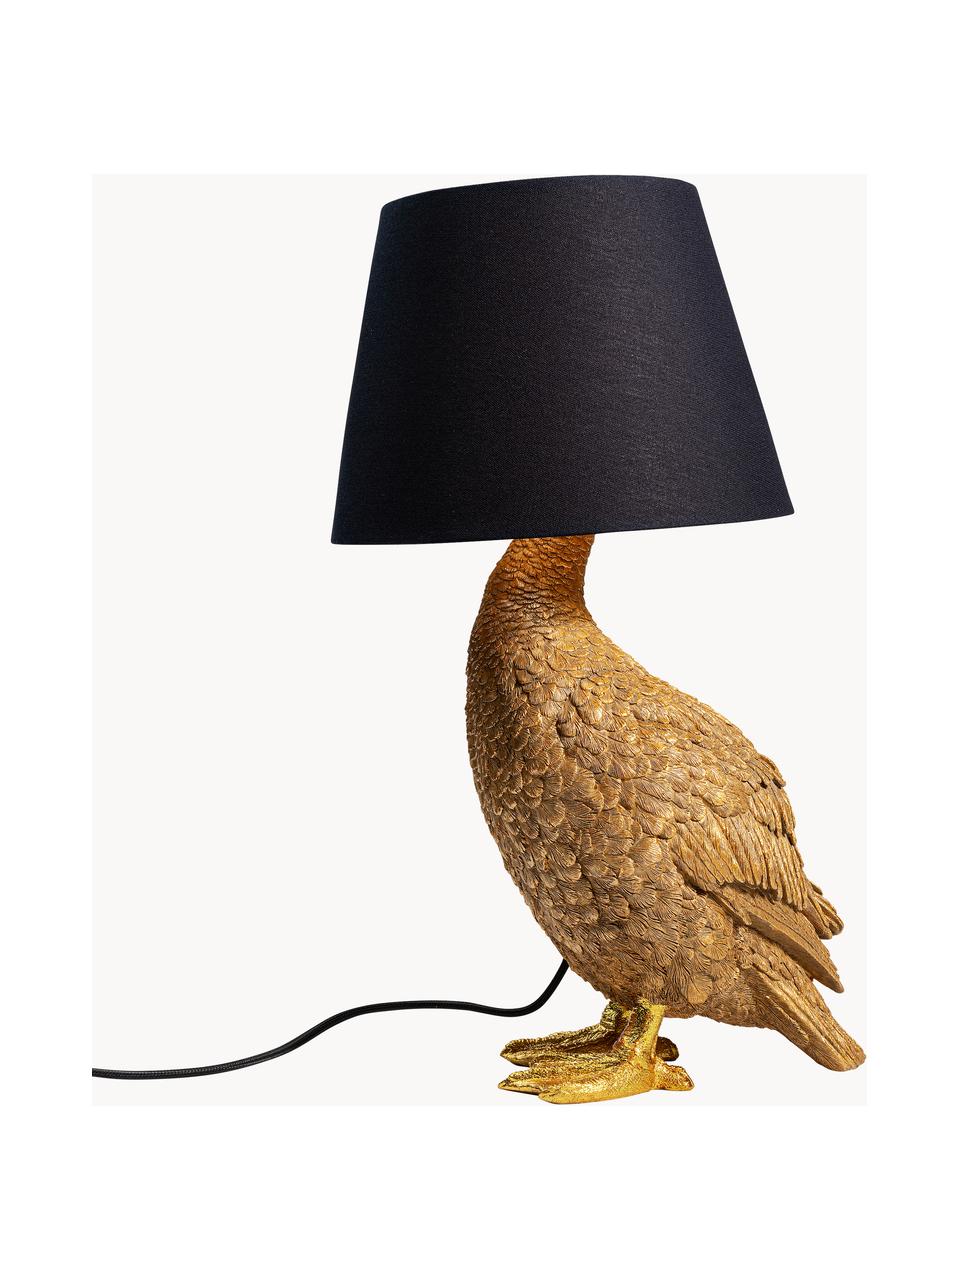 Große Design Tischlampe Duck, Lampenschirm: Baumwolle, Lampenfuß: Polyresin, Goldfarben, Schwarz, B 31 x H 58 cm